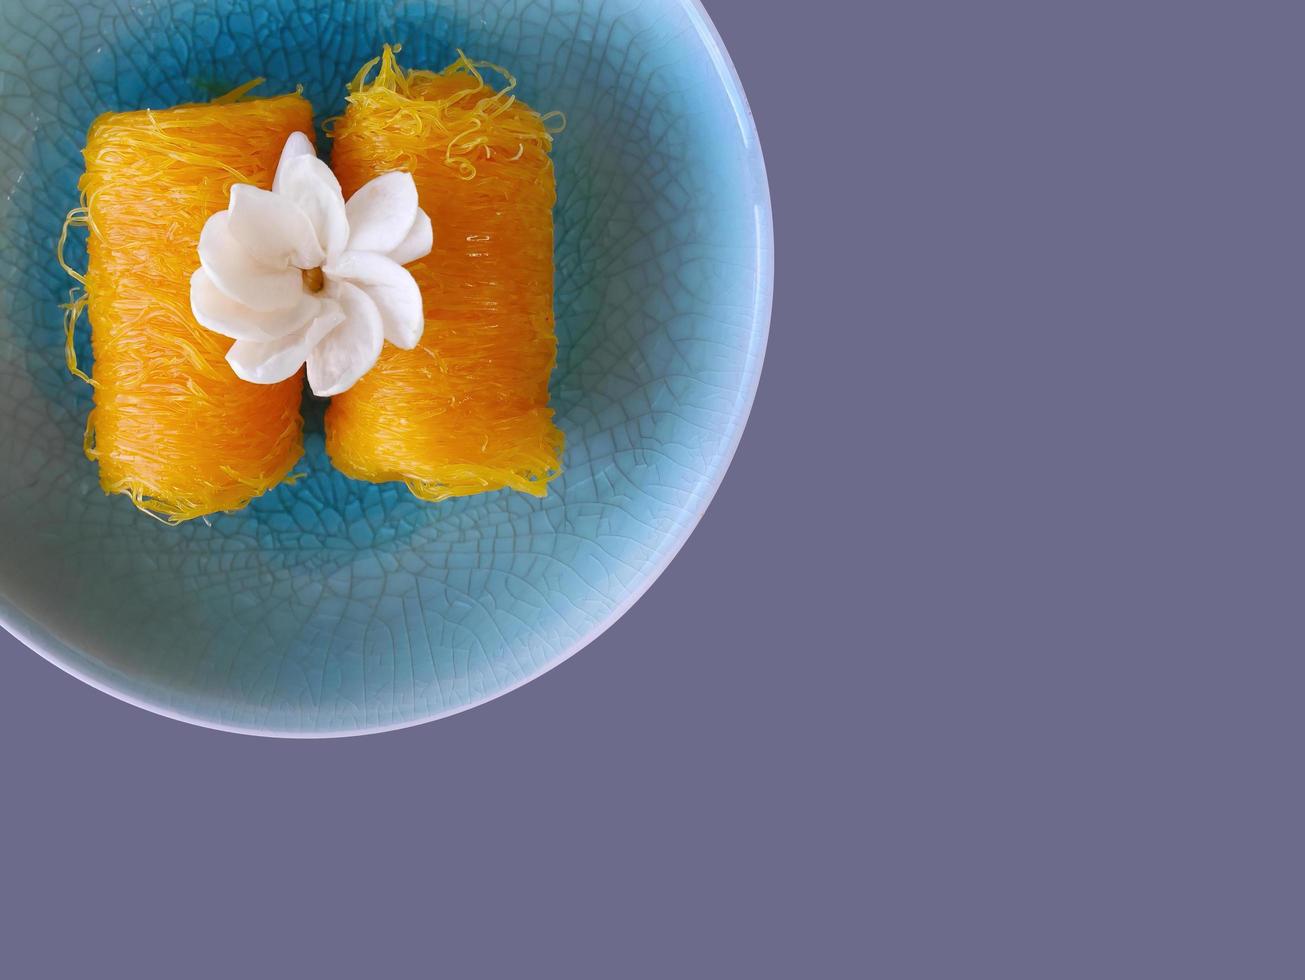 ovanifrån, närbild av thailändsk stil fios de ovos, rullad gyllene äggulatråd, traditionell sötmatsefterrätt i blå celadon tallrik, kopieringsutrymme med urklippsbana foto